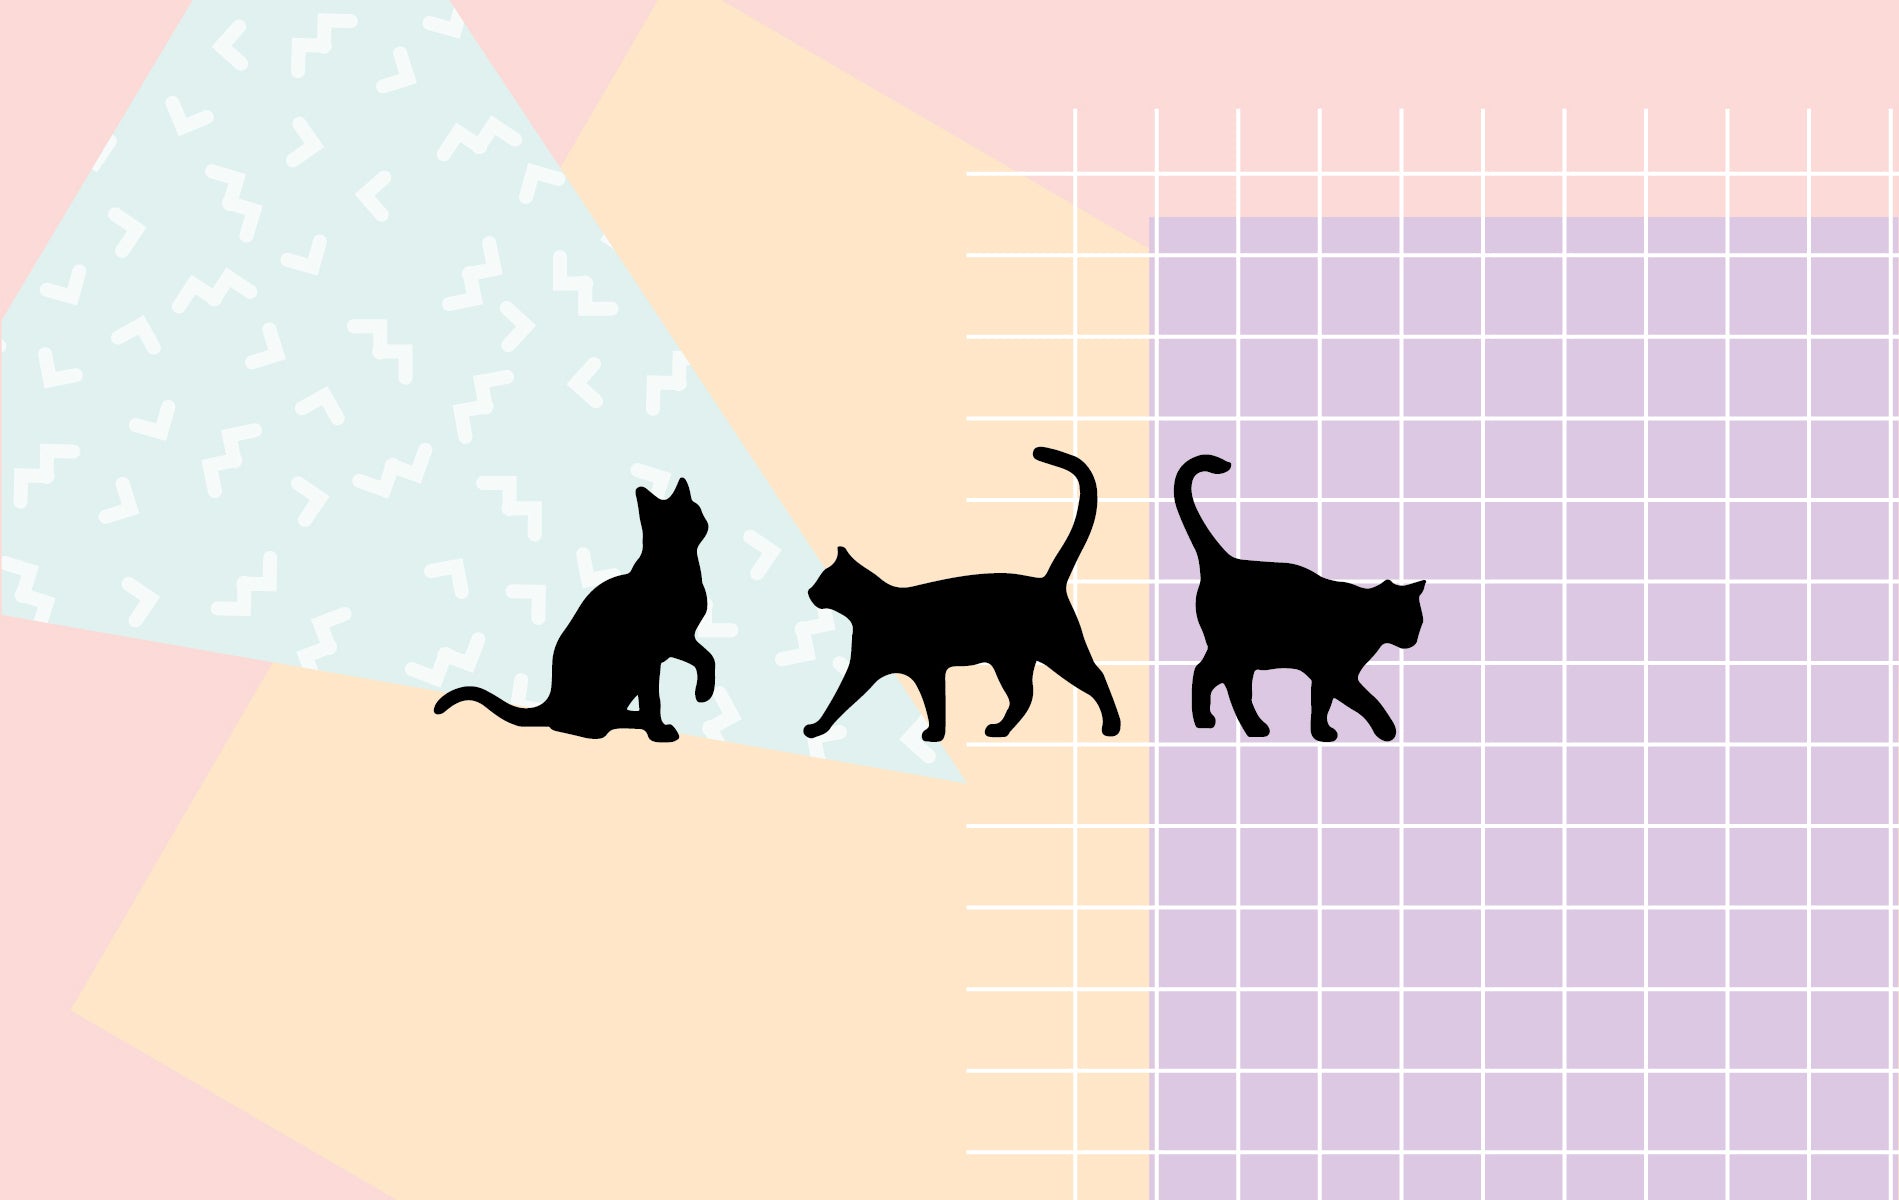 black cat wallpaper widescreen